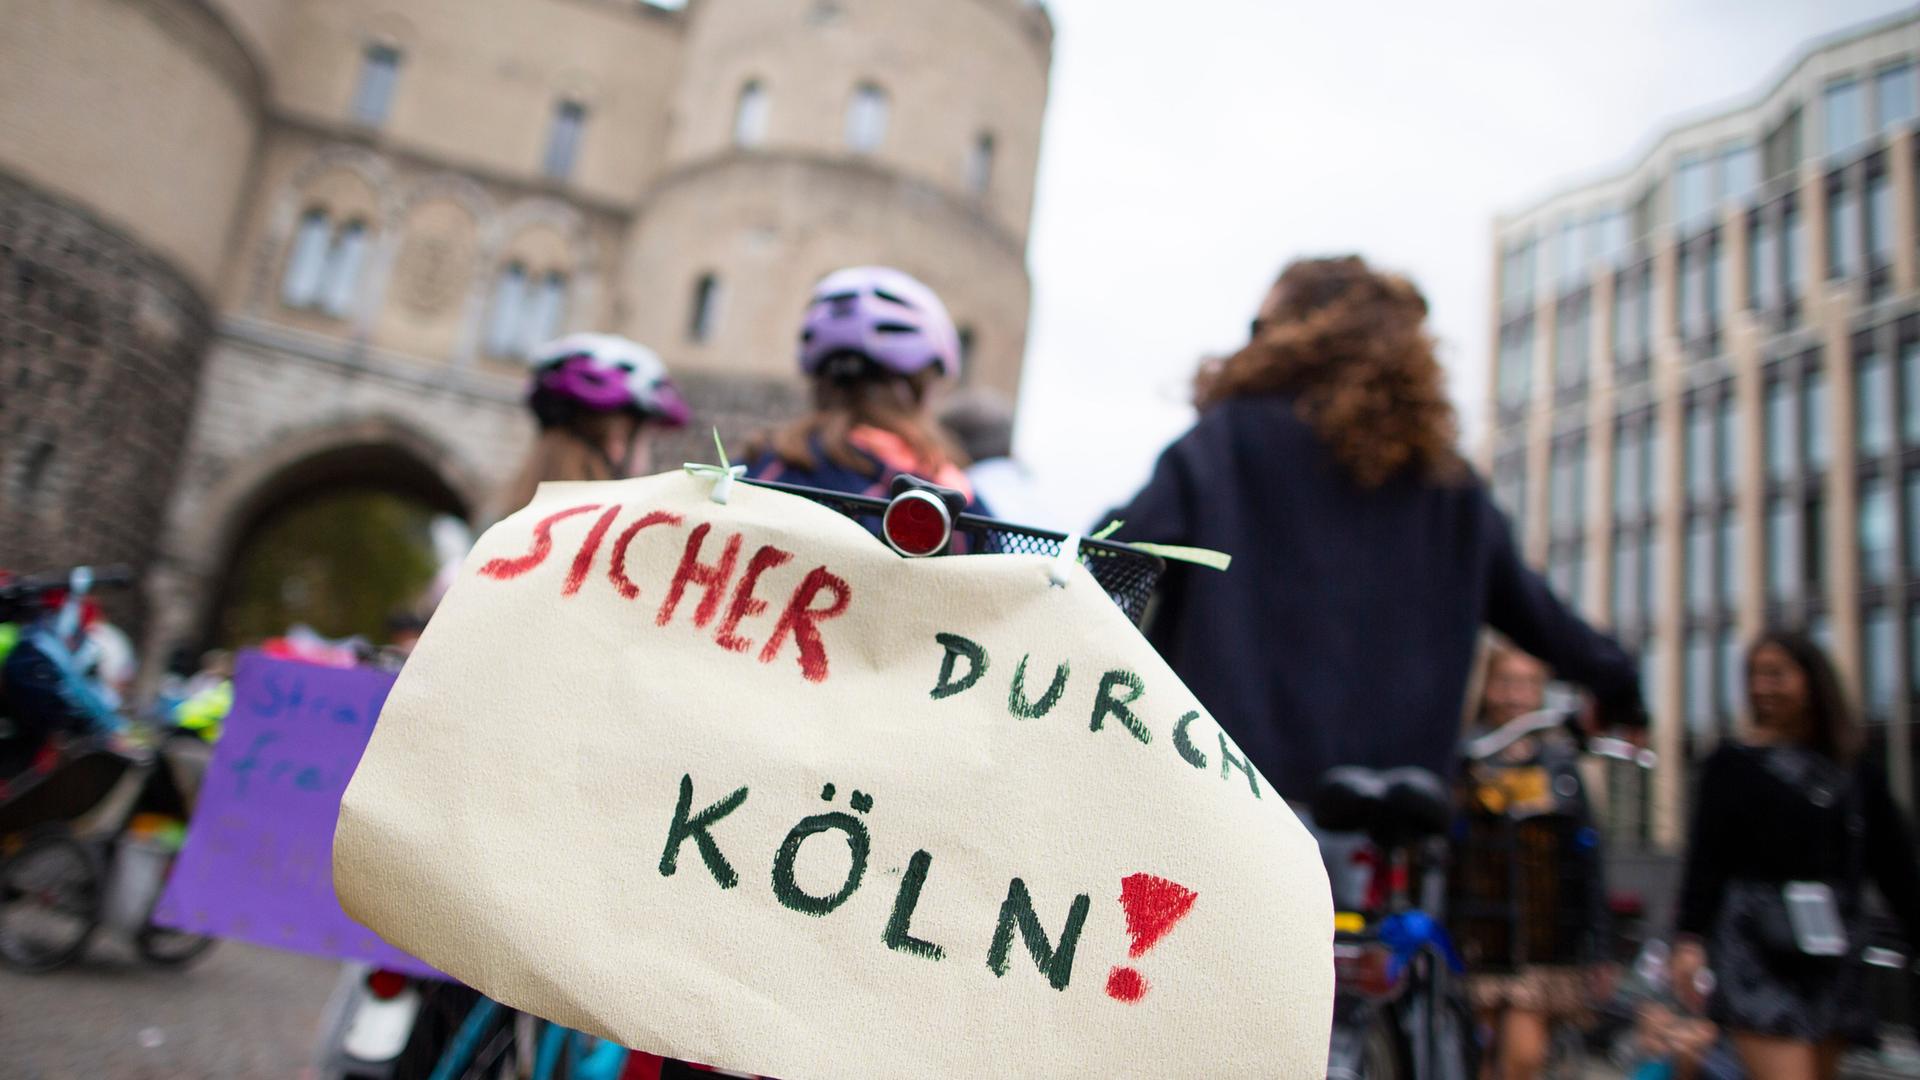 Ein Teilnehmer der bundesweiten Kinderfahrraddemonstration Kidical Mass hat hinten am Fahrrad einen Zettel mit der Aufschrift "Sicher durch Köln".